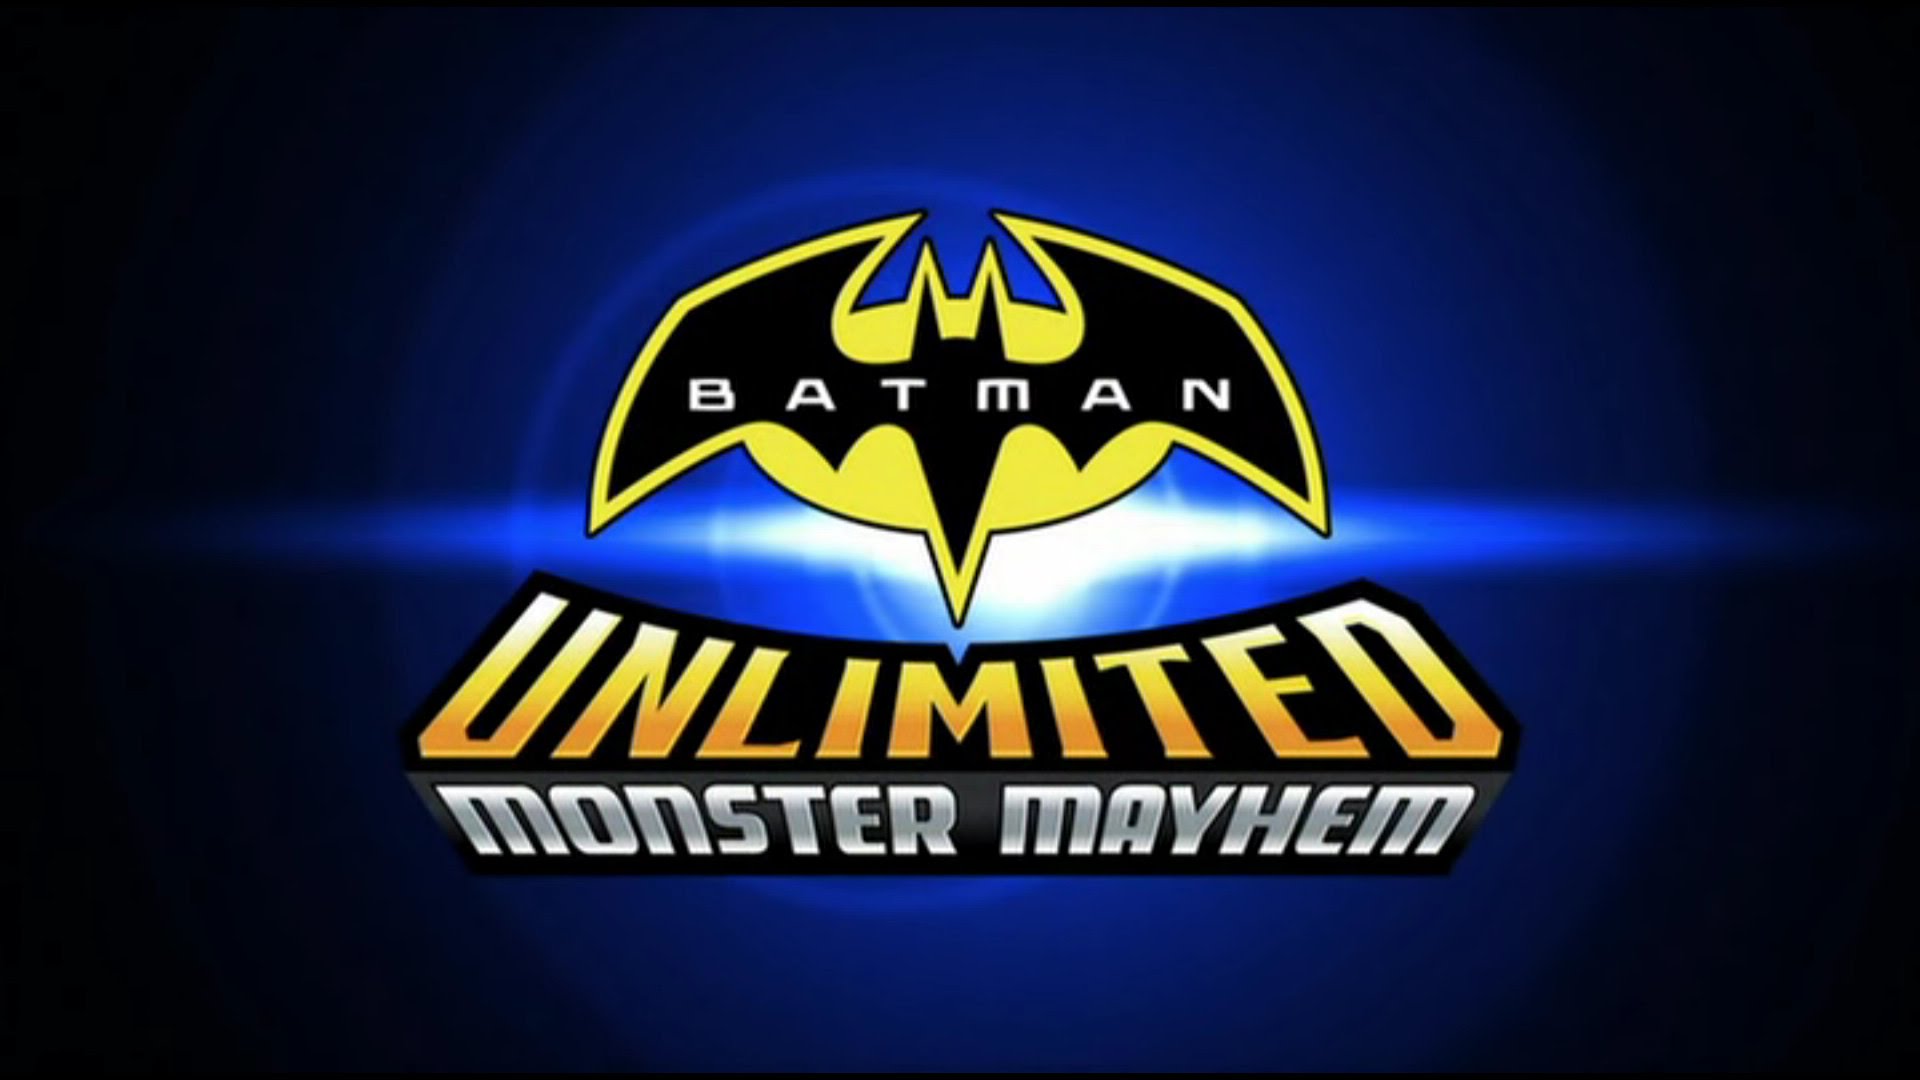 Free download Batman Unlimited Monster Mayhem Wallpapers and Background  Images [1920x1080] for your Desktop, Mobile & Tablet | Explore 50+ Mayhem  Background | Mayhem Fortnite Wallpapers,